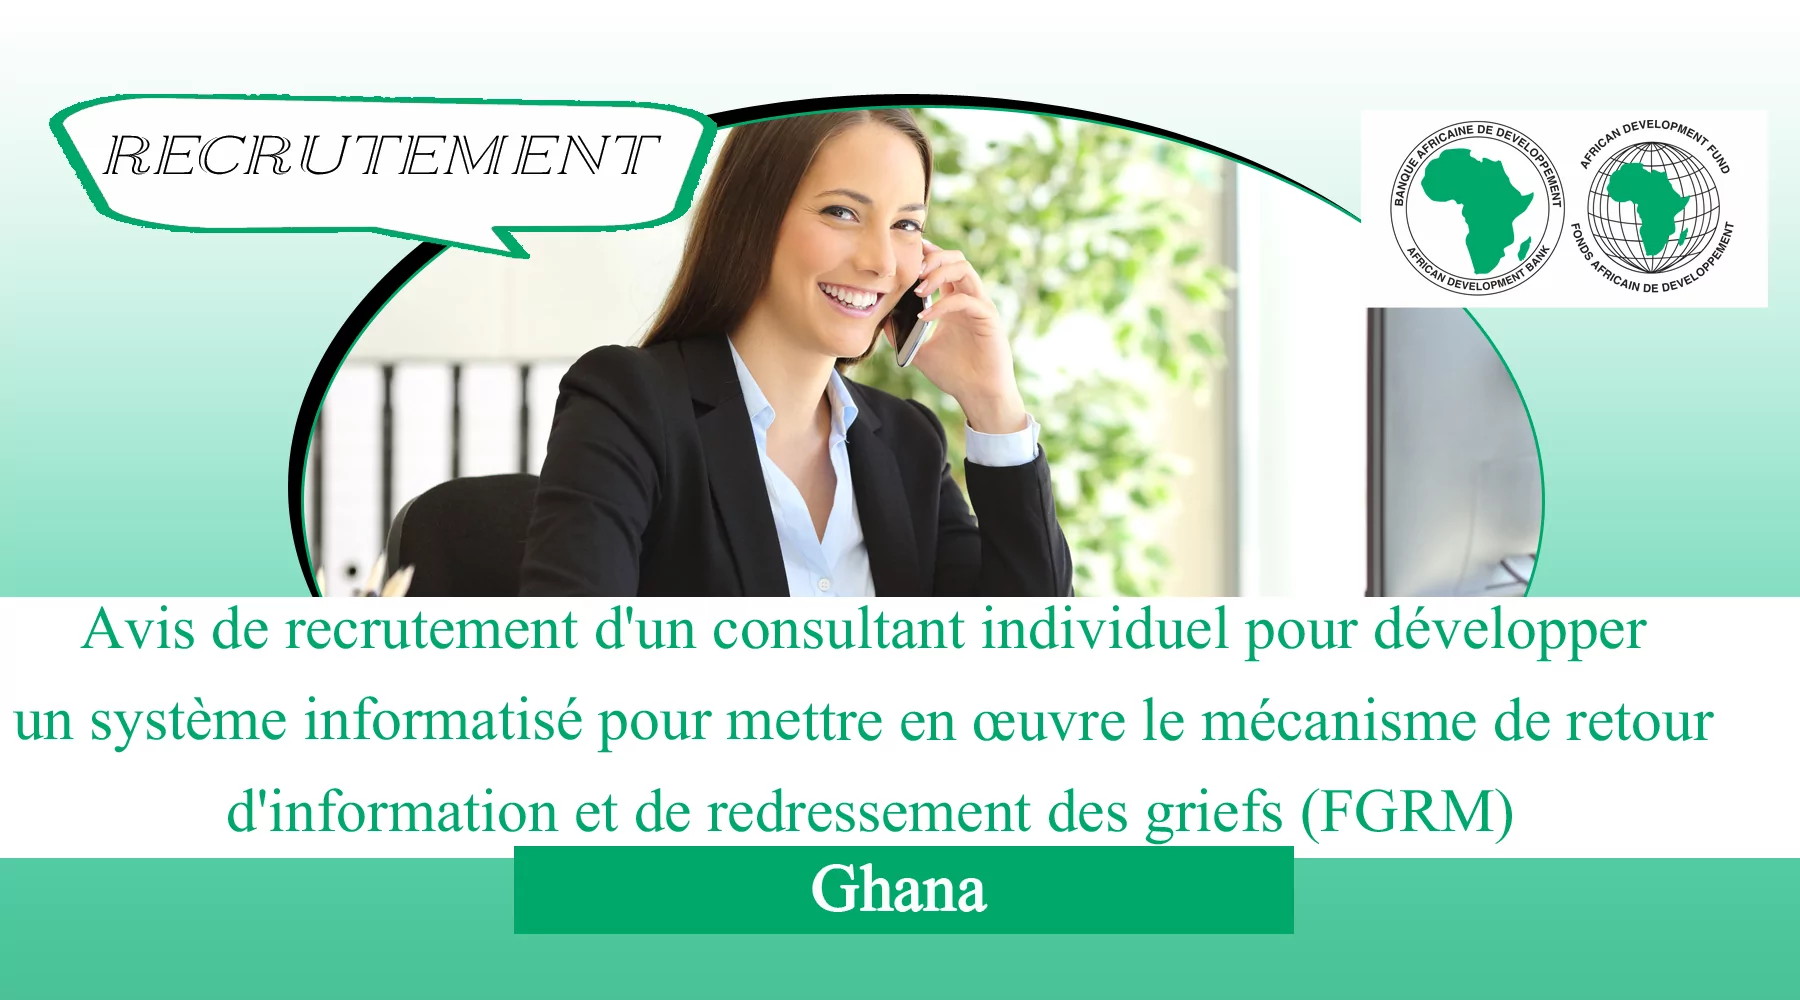 Avis de recrutement d’un consultant individuel pour développer un système informatisé pour mettre en œuvre le mécanisme de retour d’information et de redressement des griefs (FGRM), Ghana